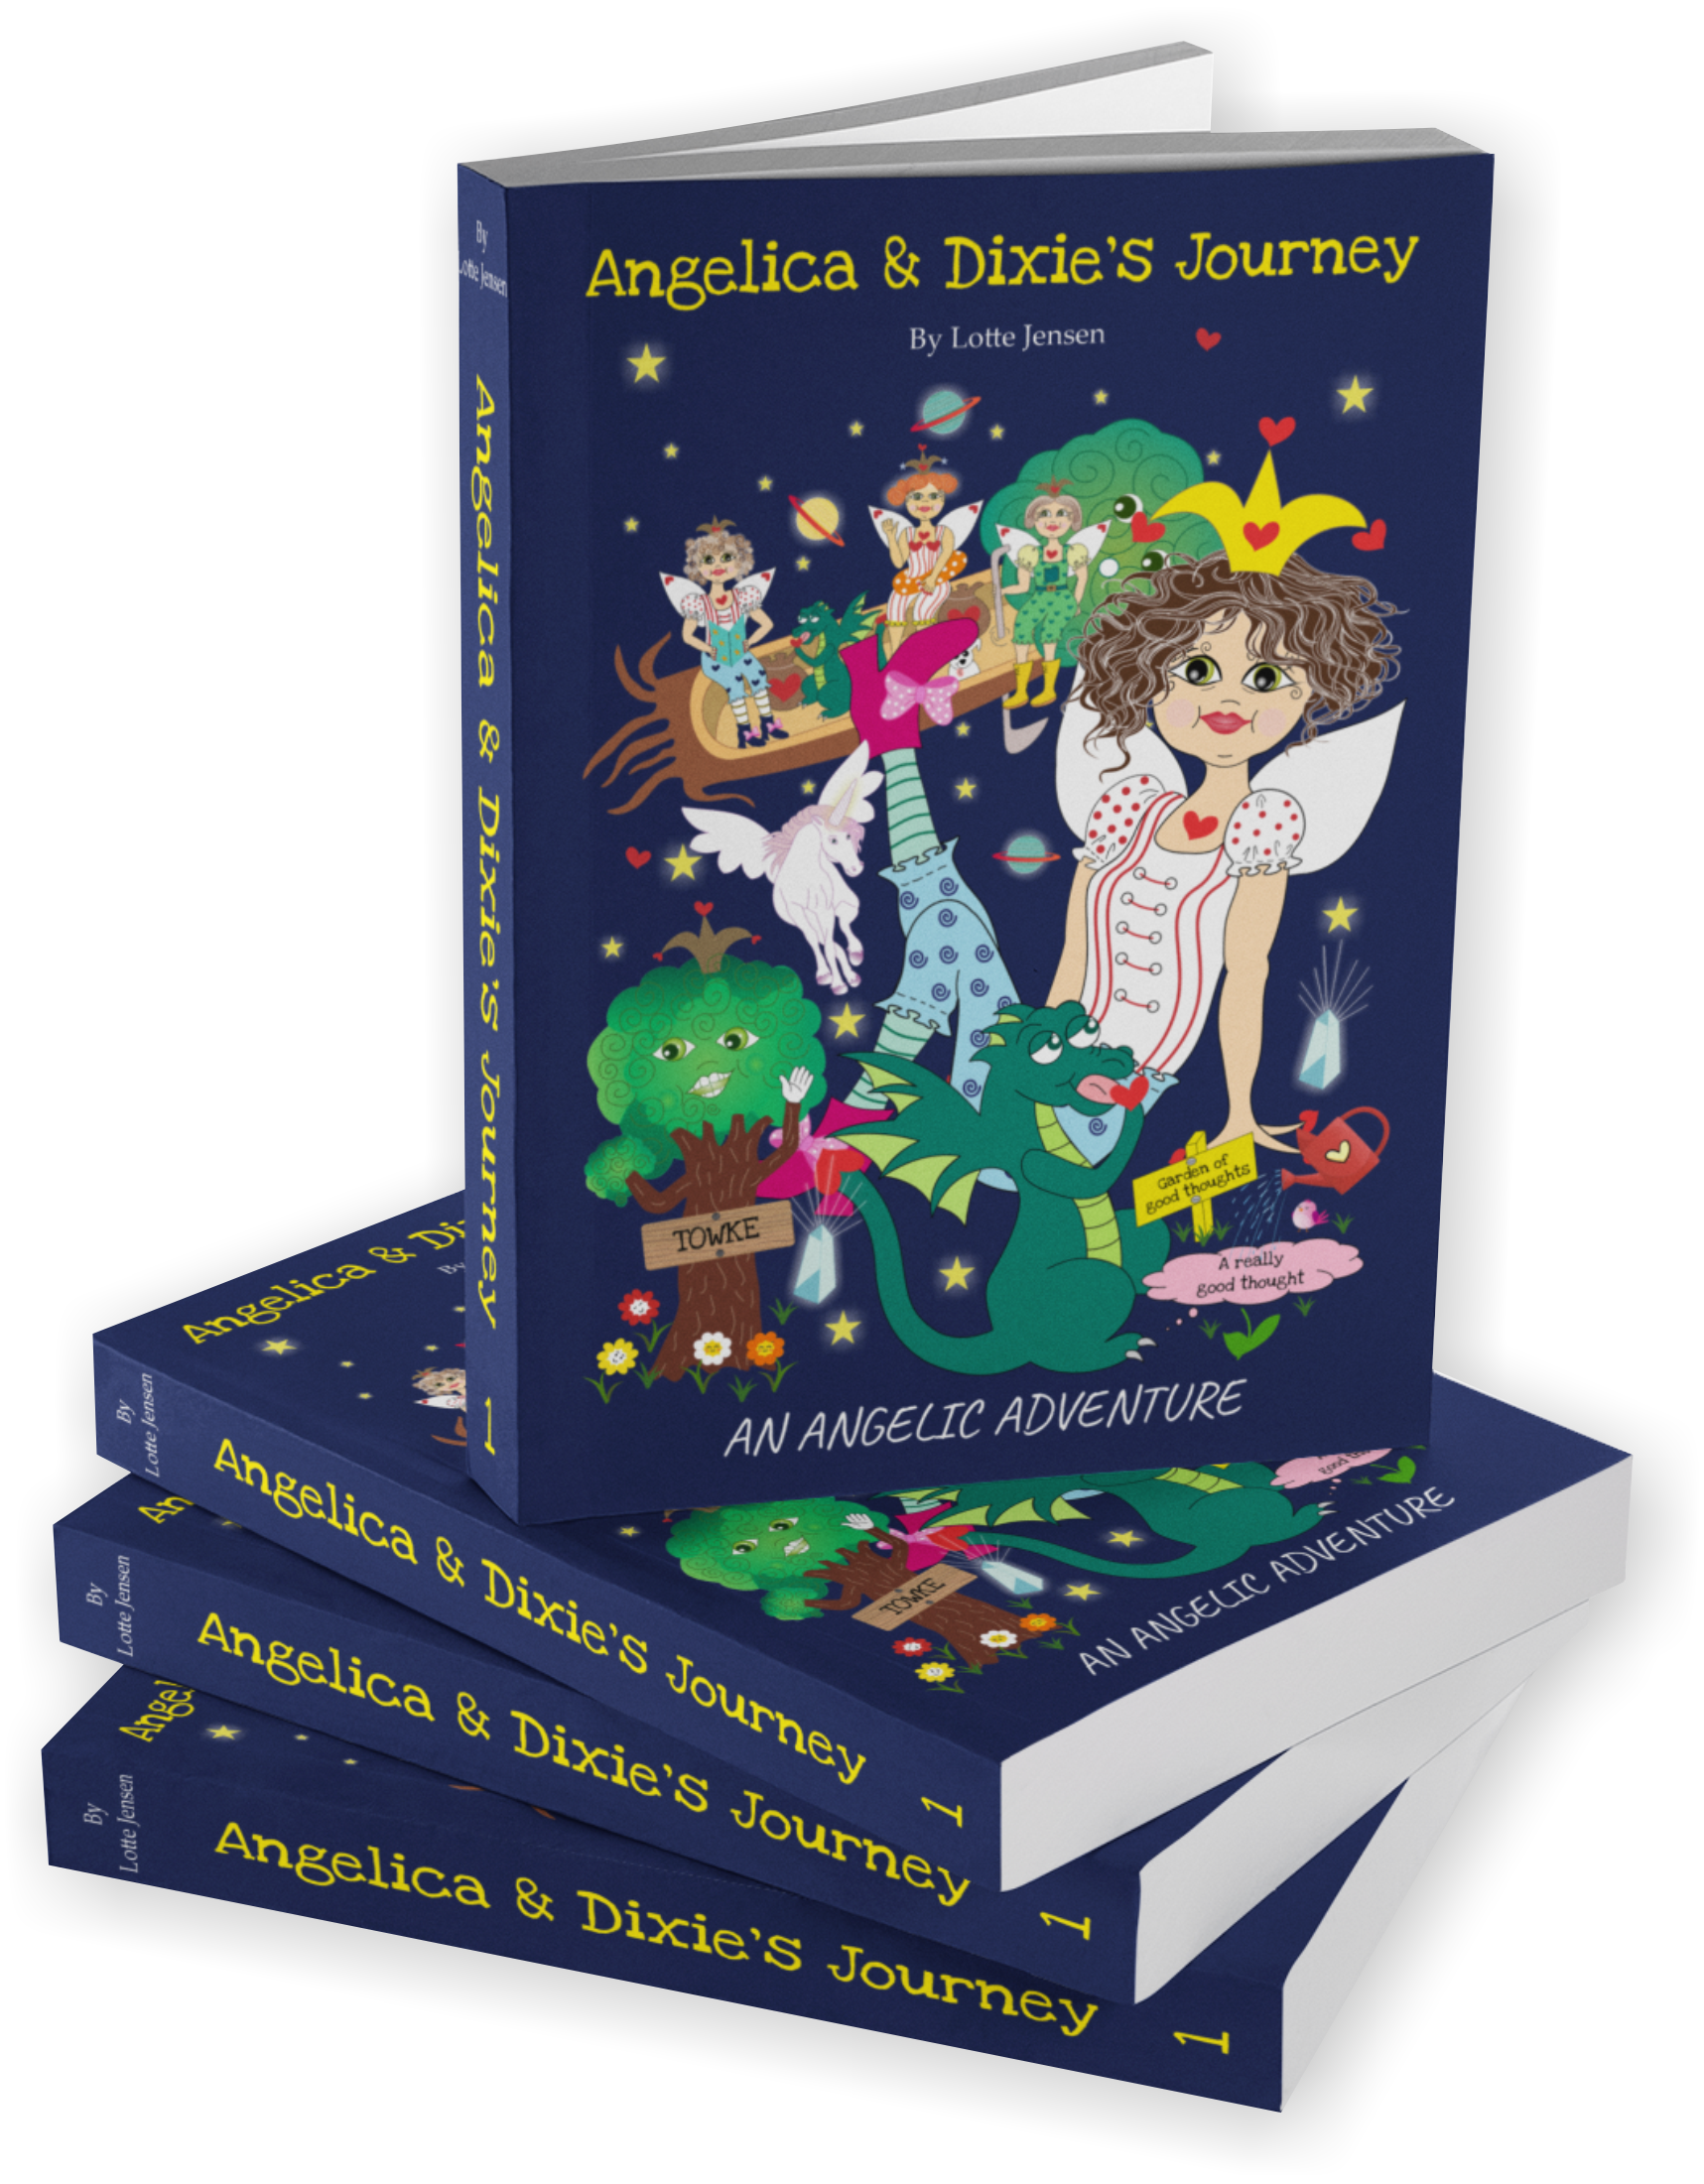 Angelica & Dixie's Journey